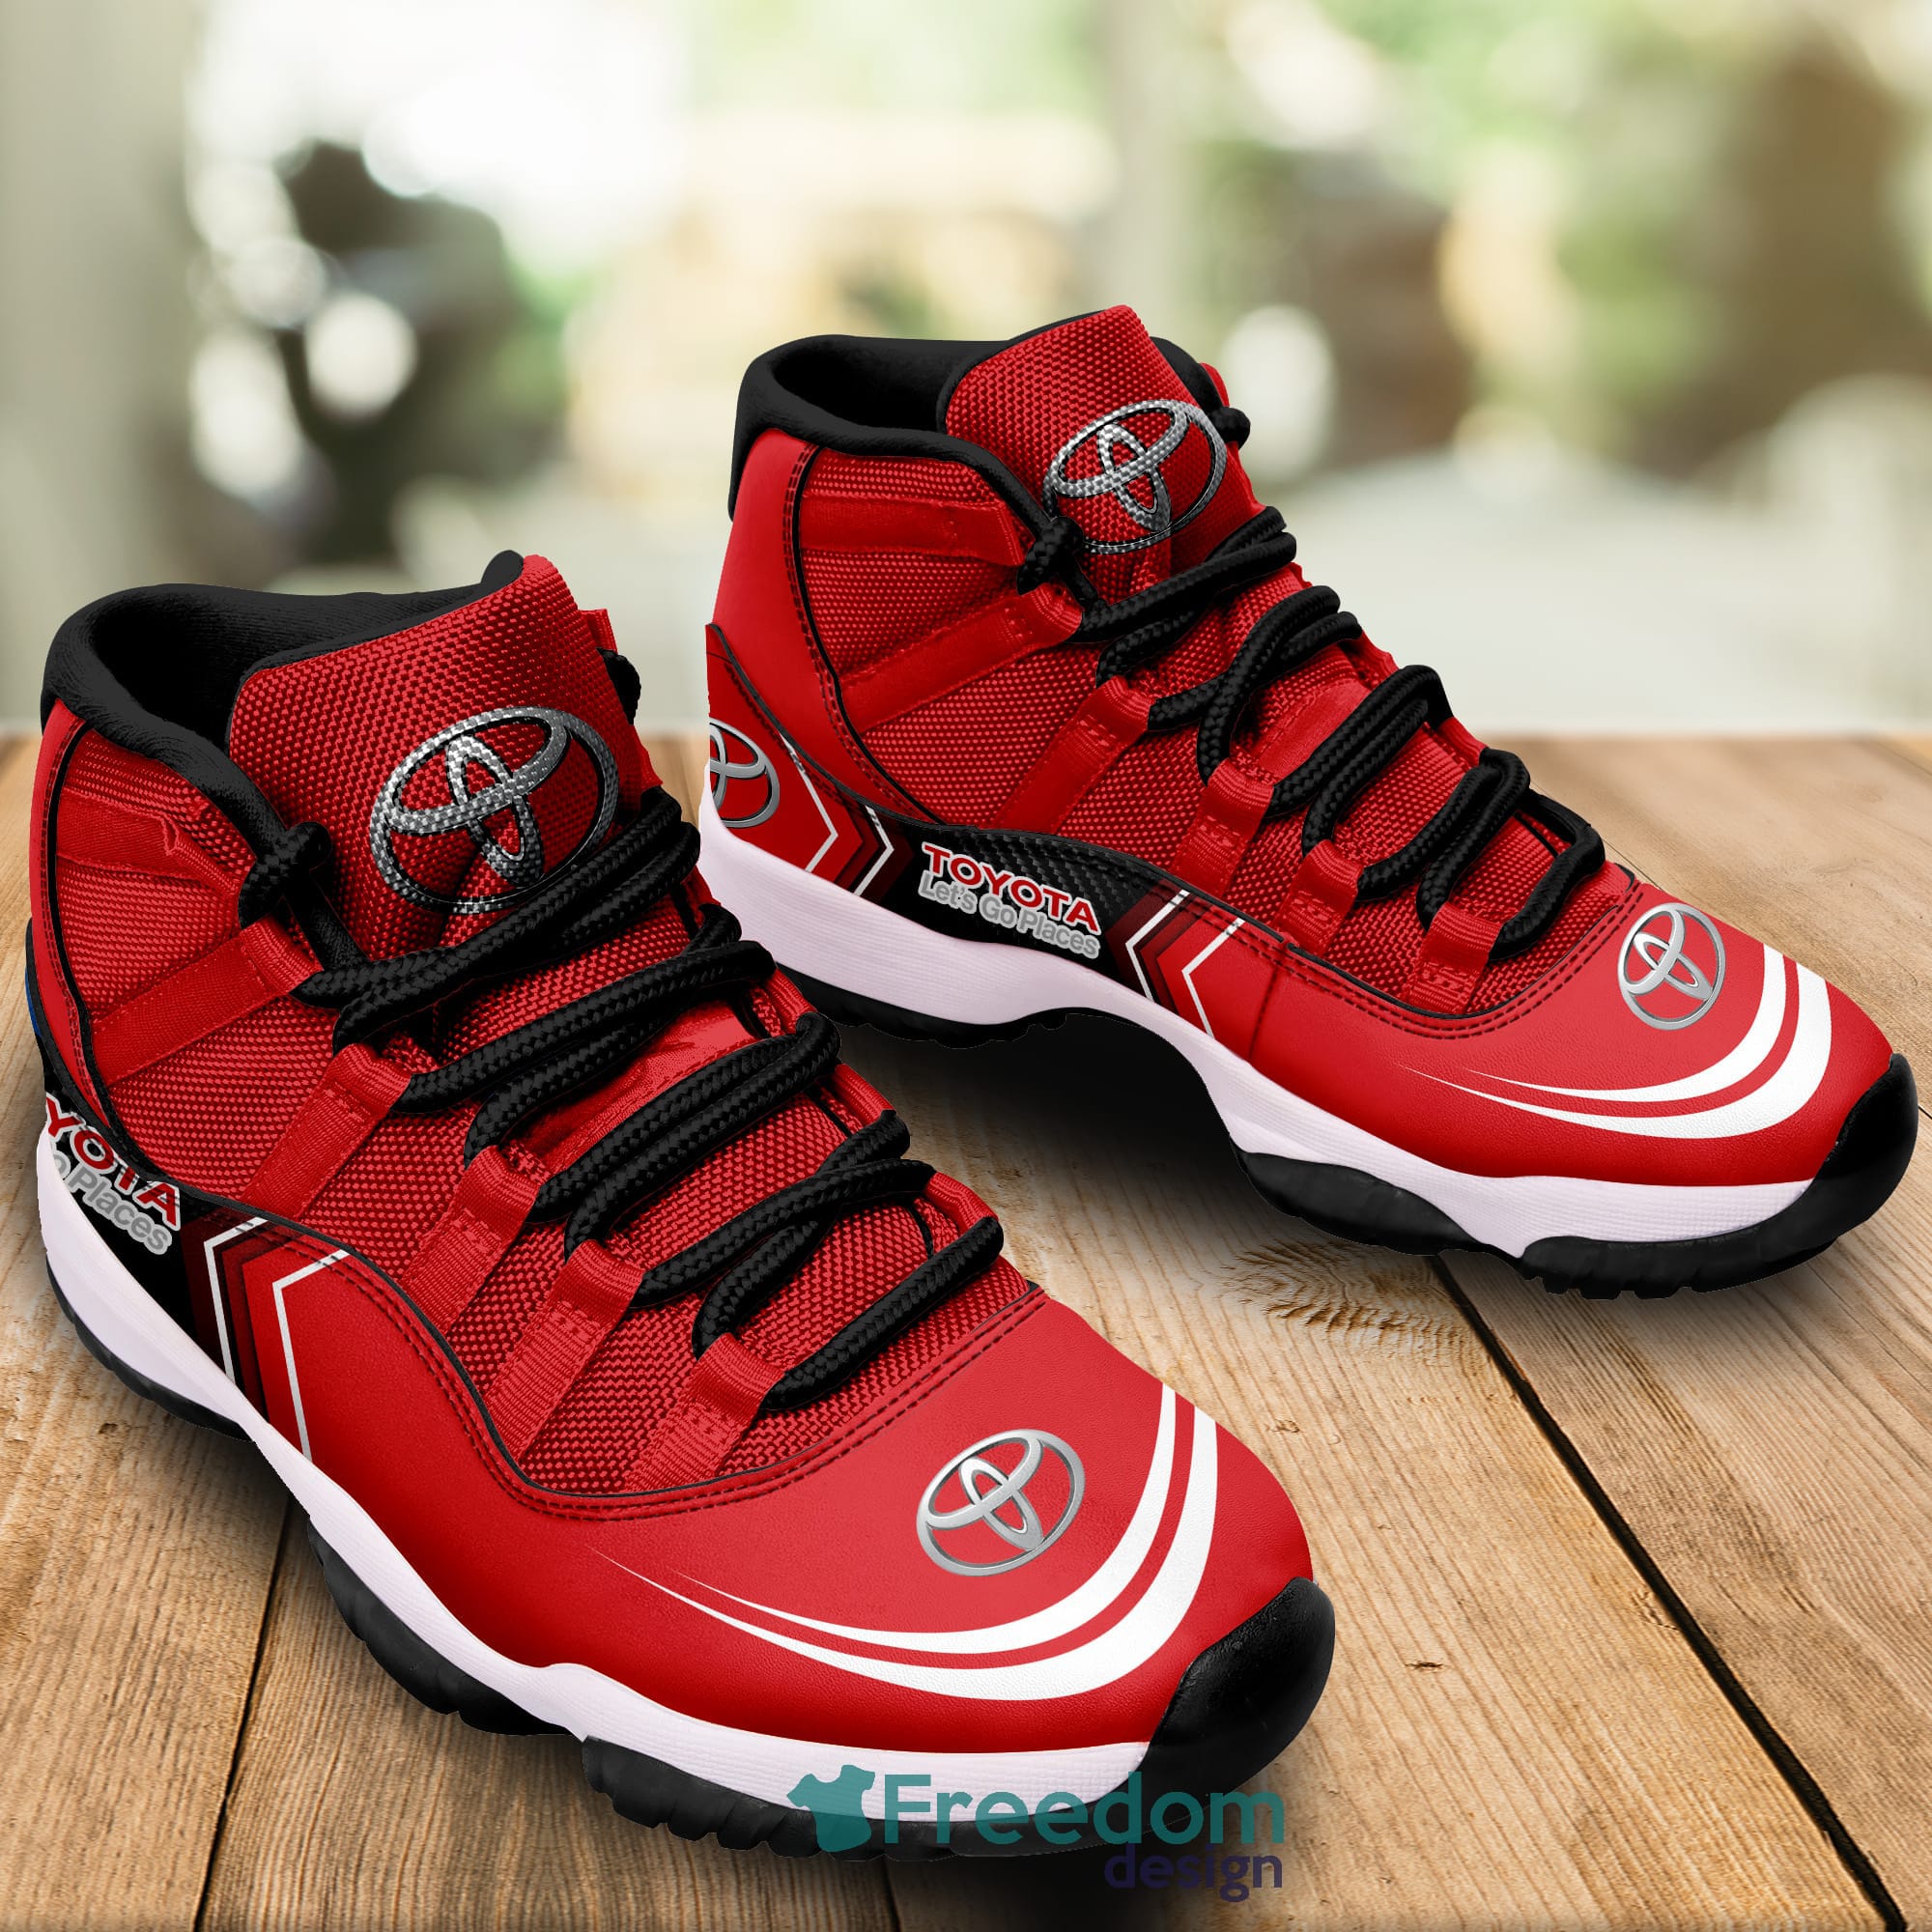 Air Jordan 11 - Sneakers Jordan For men and women